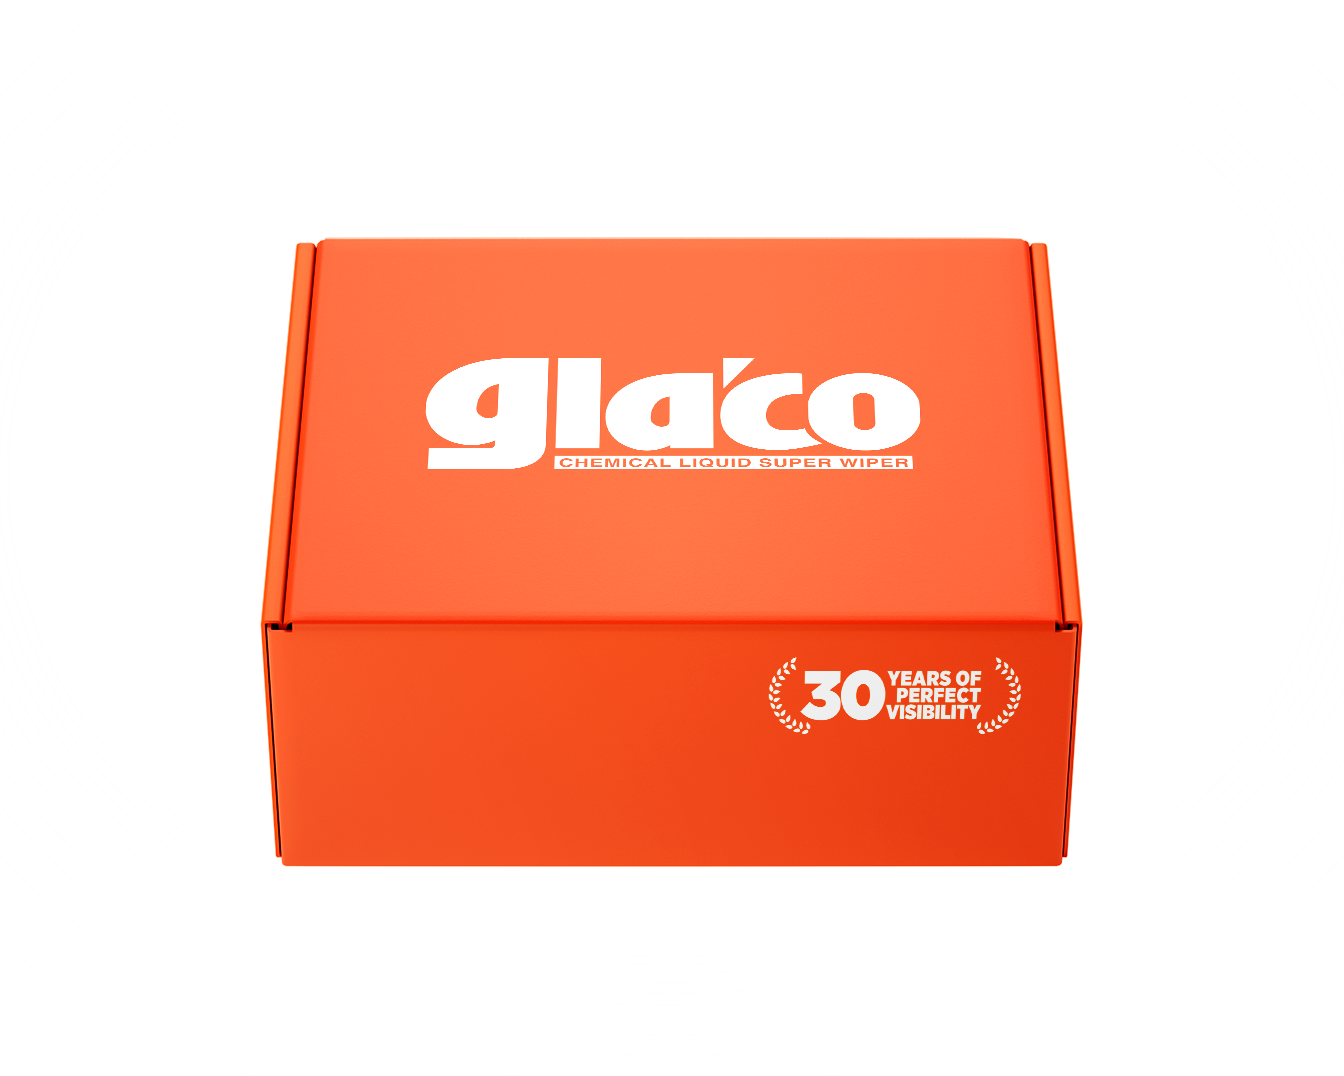 Soft99 Glaco Q Glass Preparation Agent